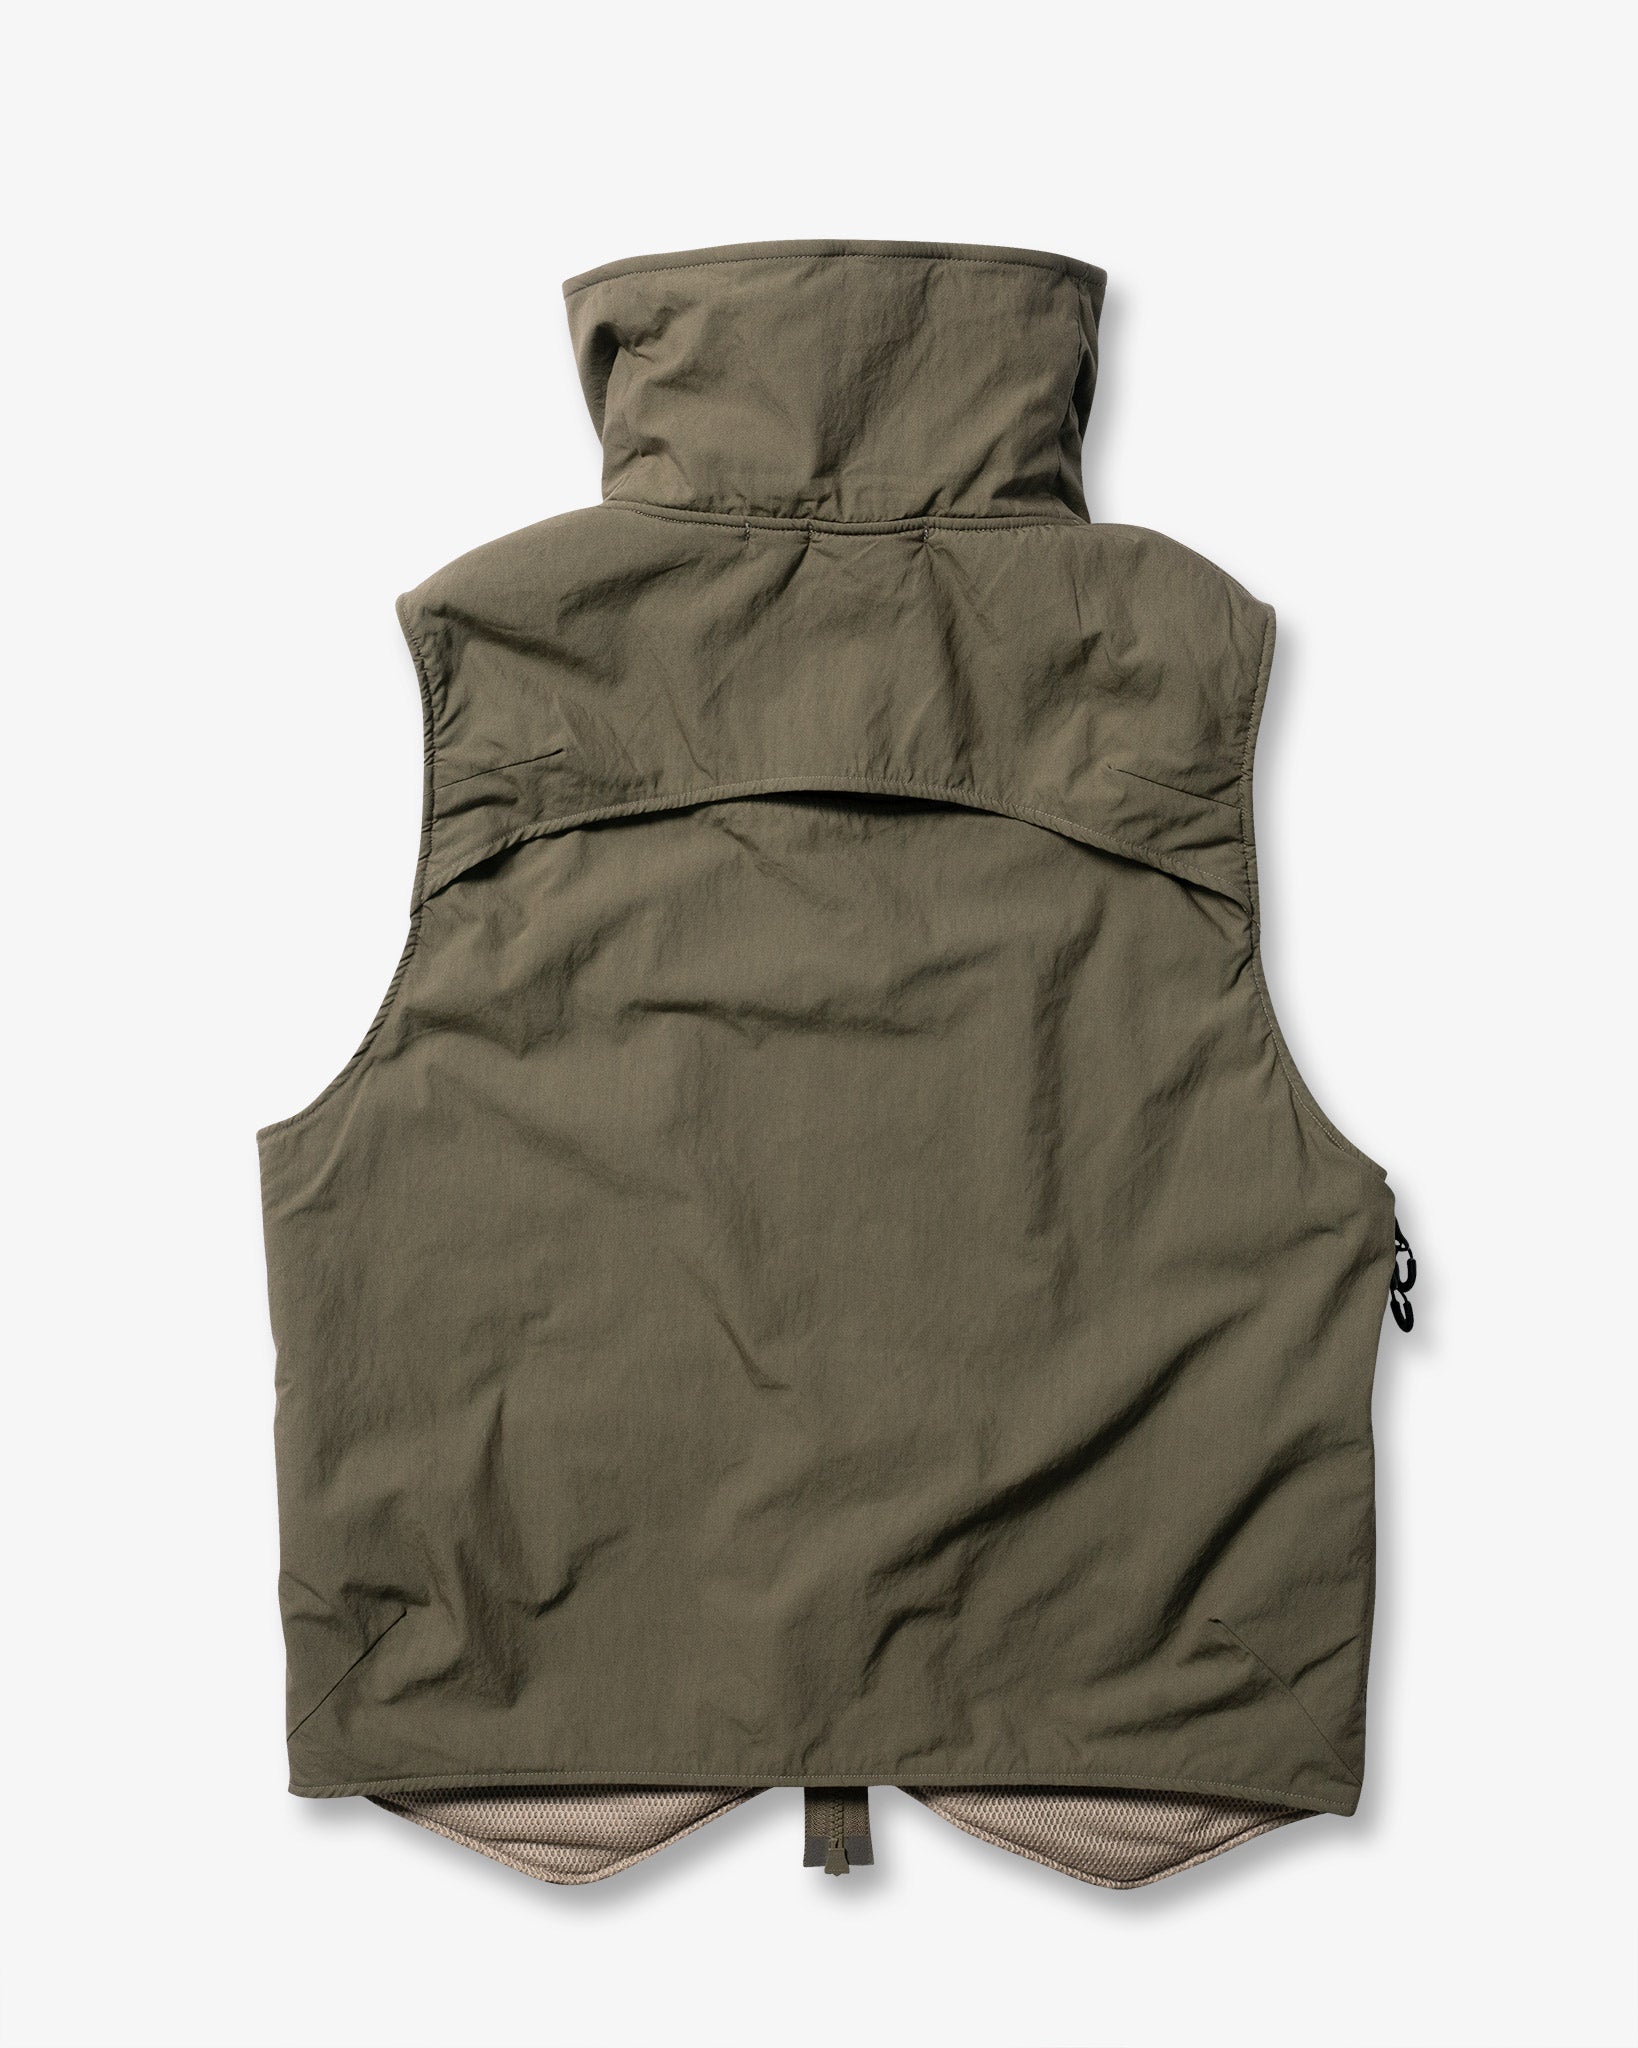 BARRICADE Vest (VT-VB03) - Khaki